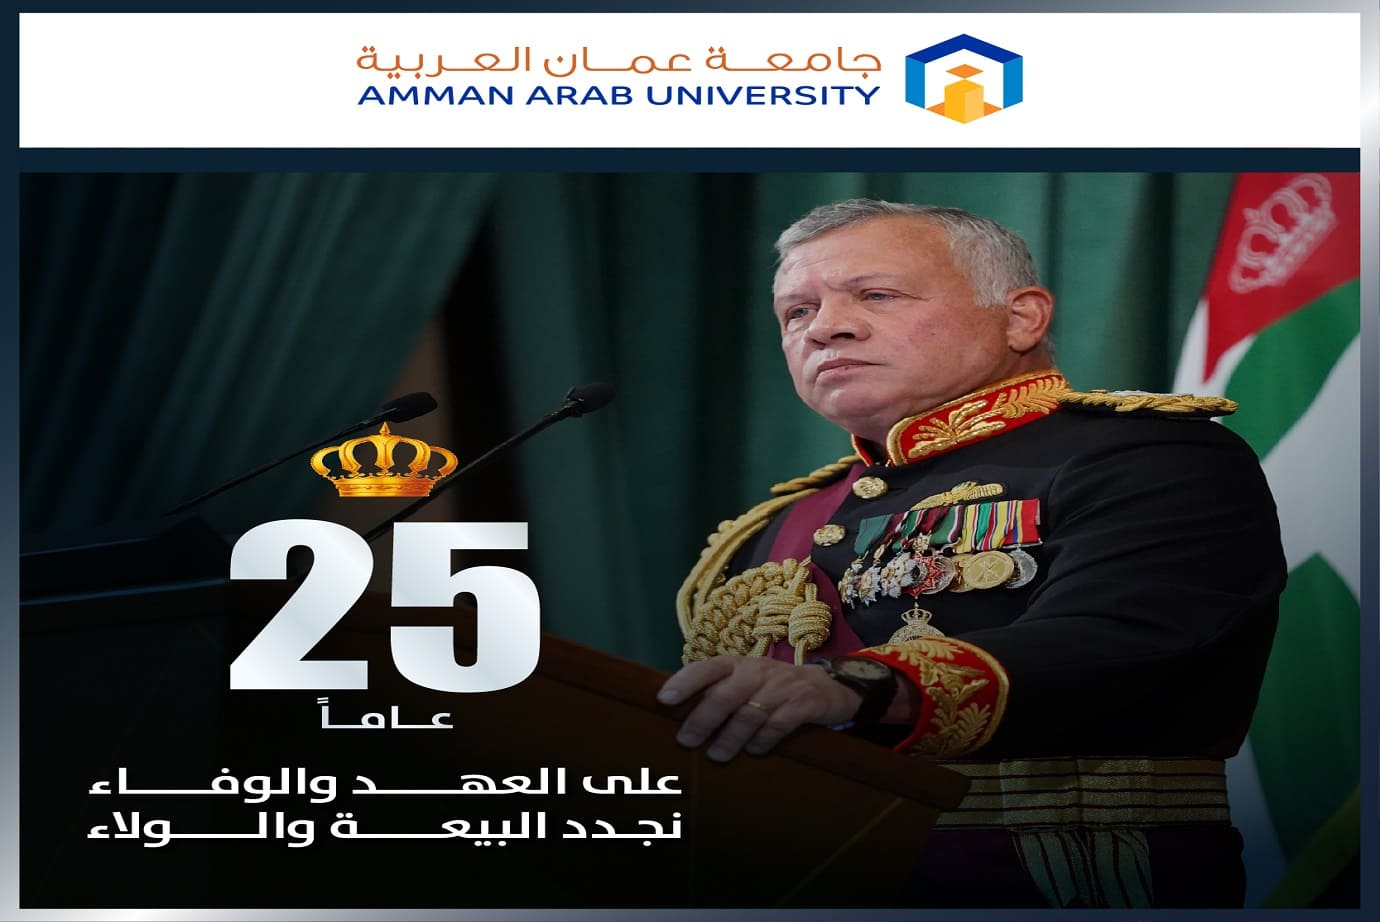 "عمان العربية" تحتفل باليوبيل الفضي لتولّي جلالة الملك عبد الله الثاني ابن الحسين المعظم سلطاته الدستورية